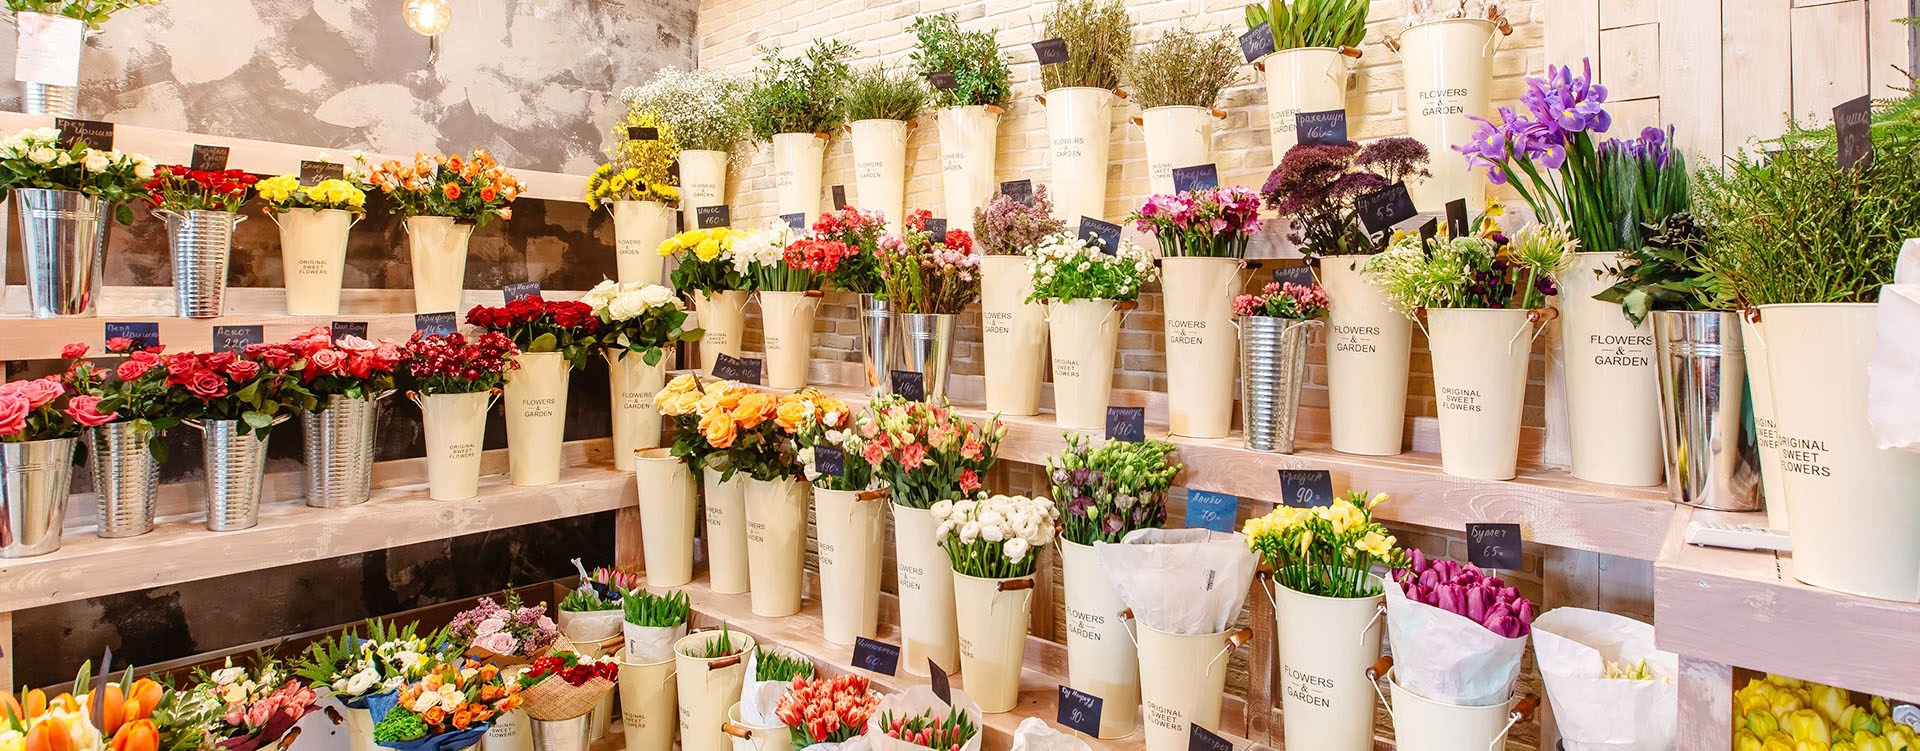 Как электронные карты помогут привлечь клиентов в цветочный магазин